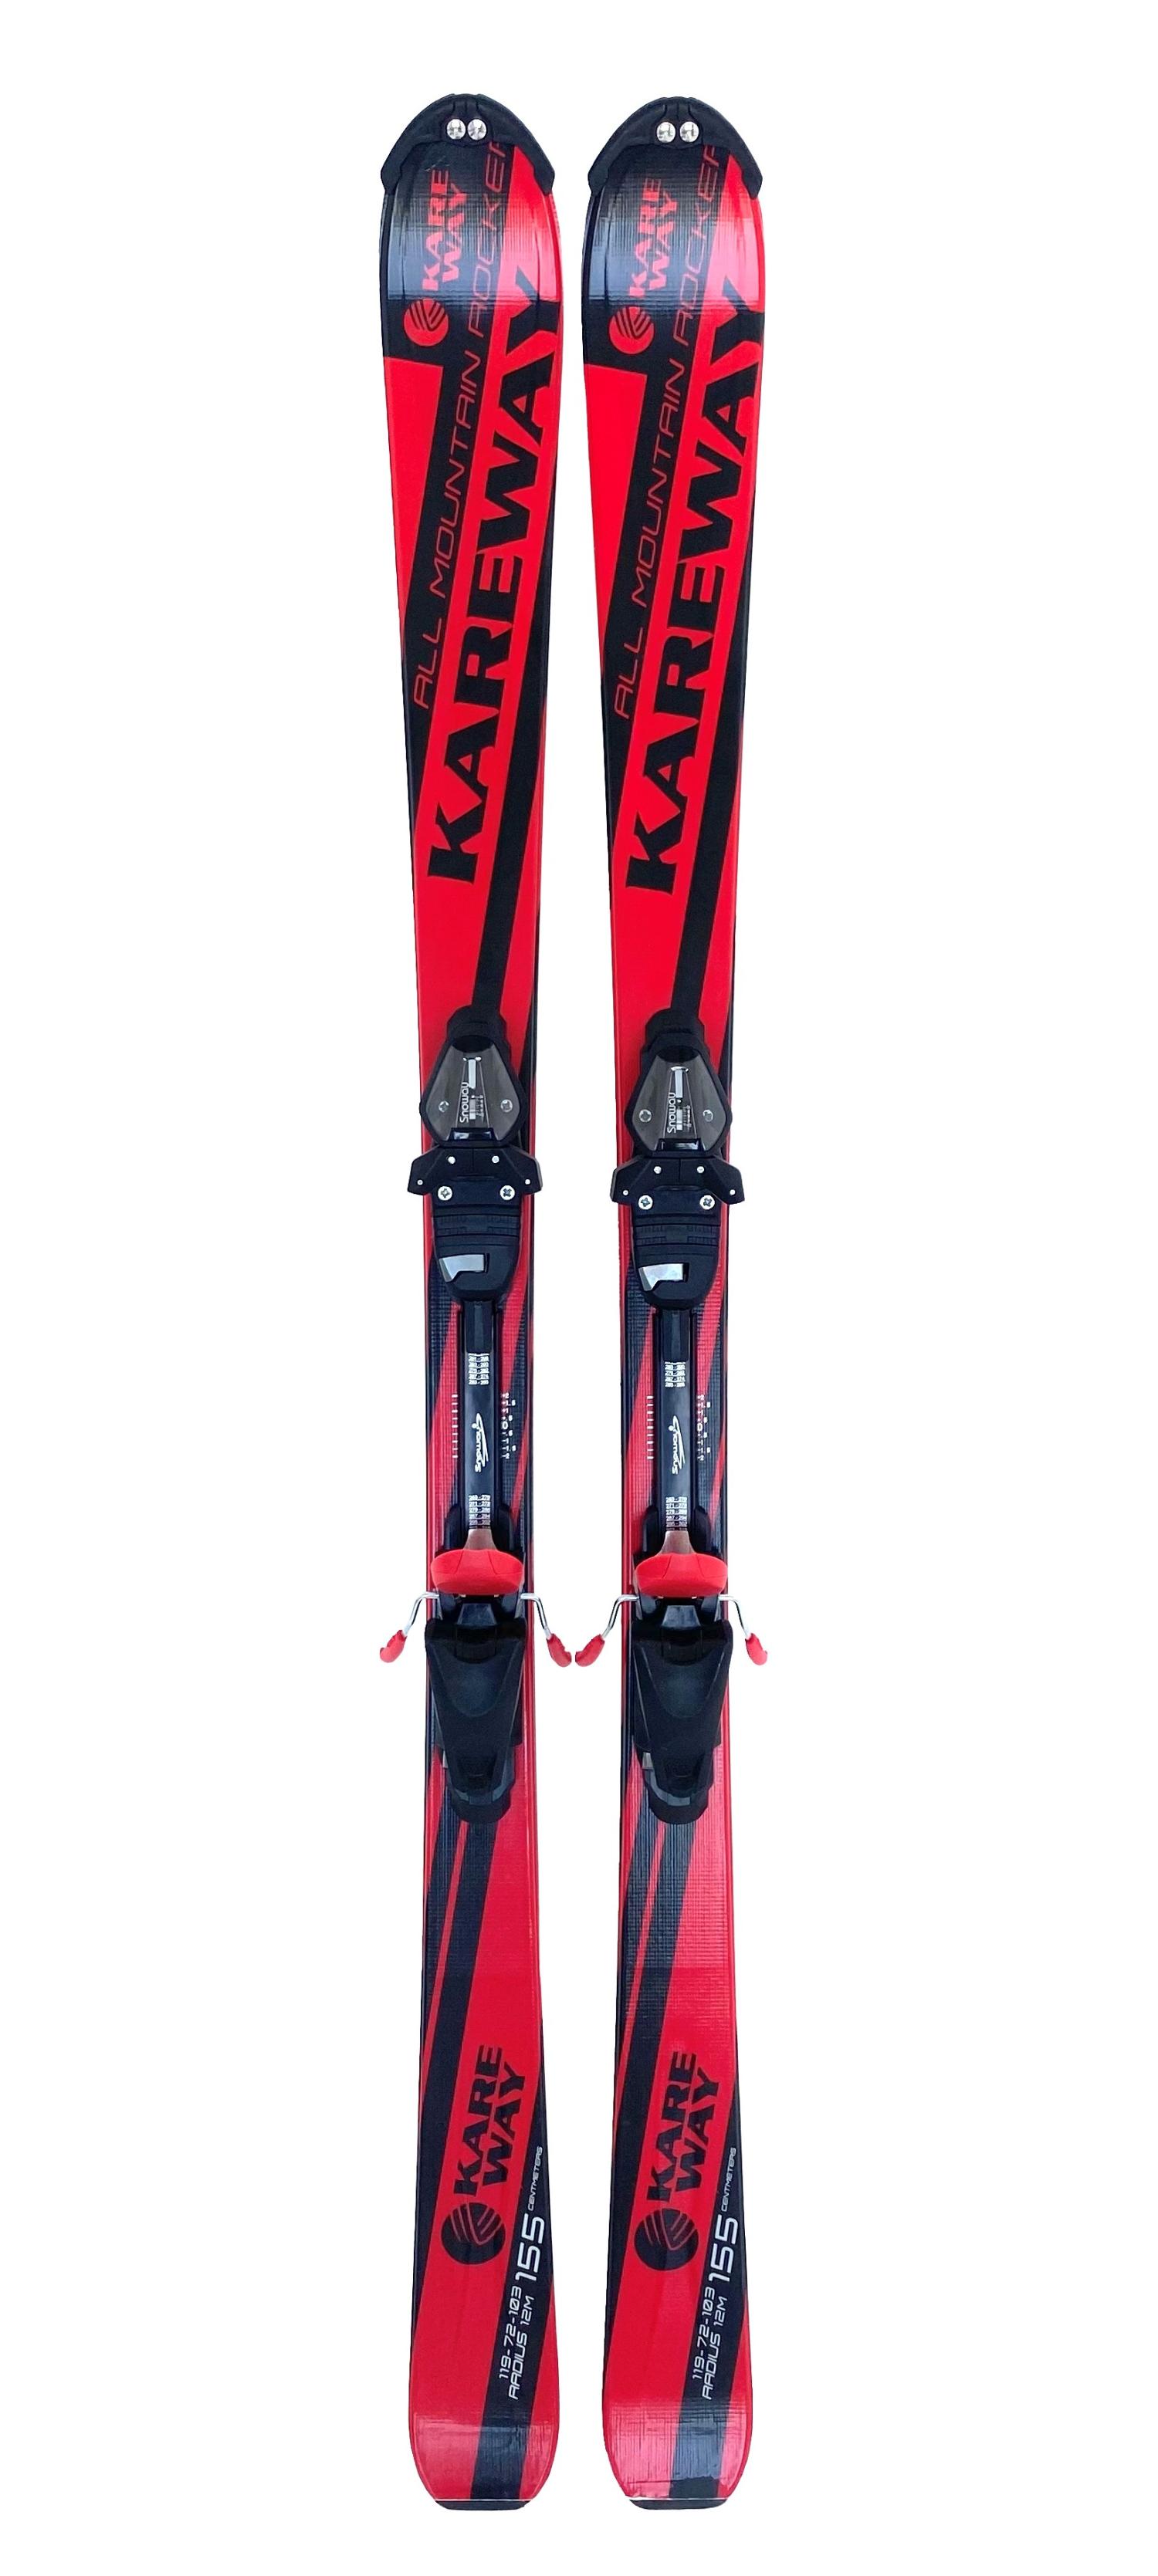 Горные лыжи с креплениями Lightning Kareway Black/Red + кр. Snoway SX 10